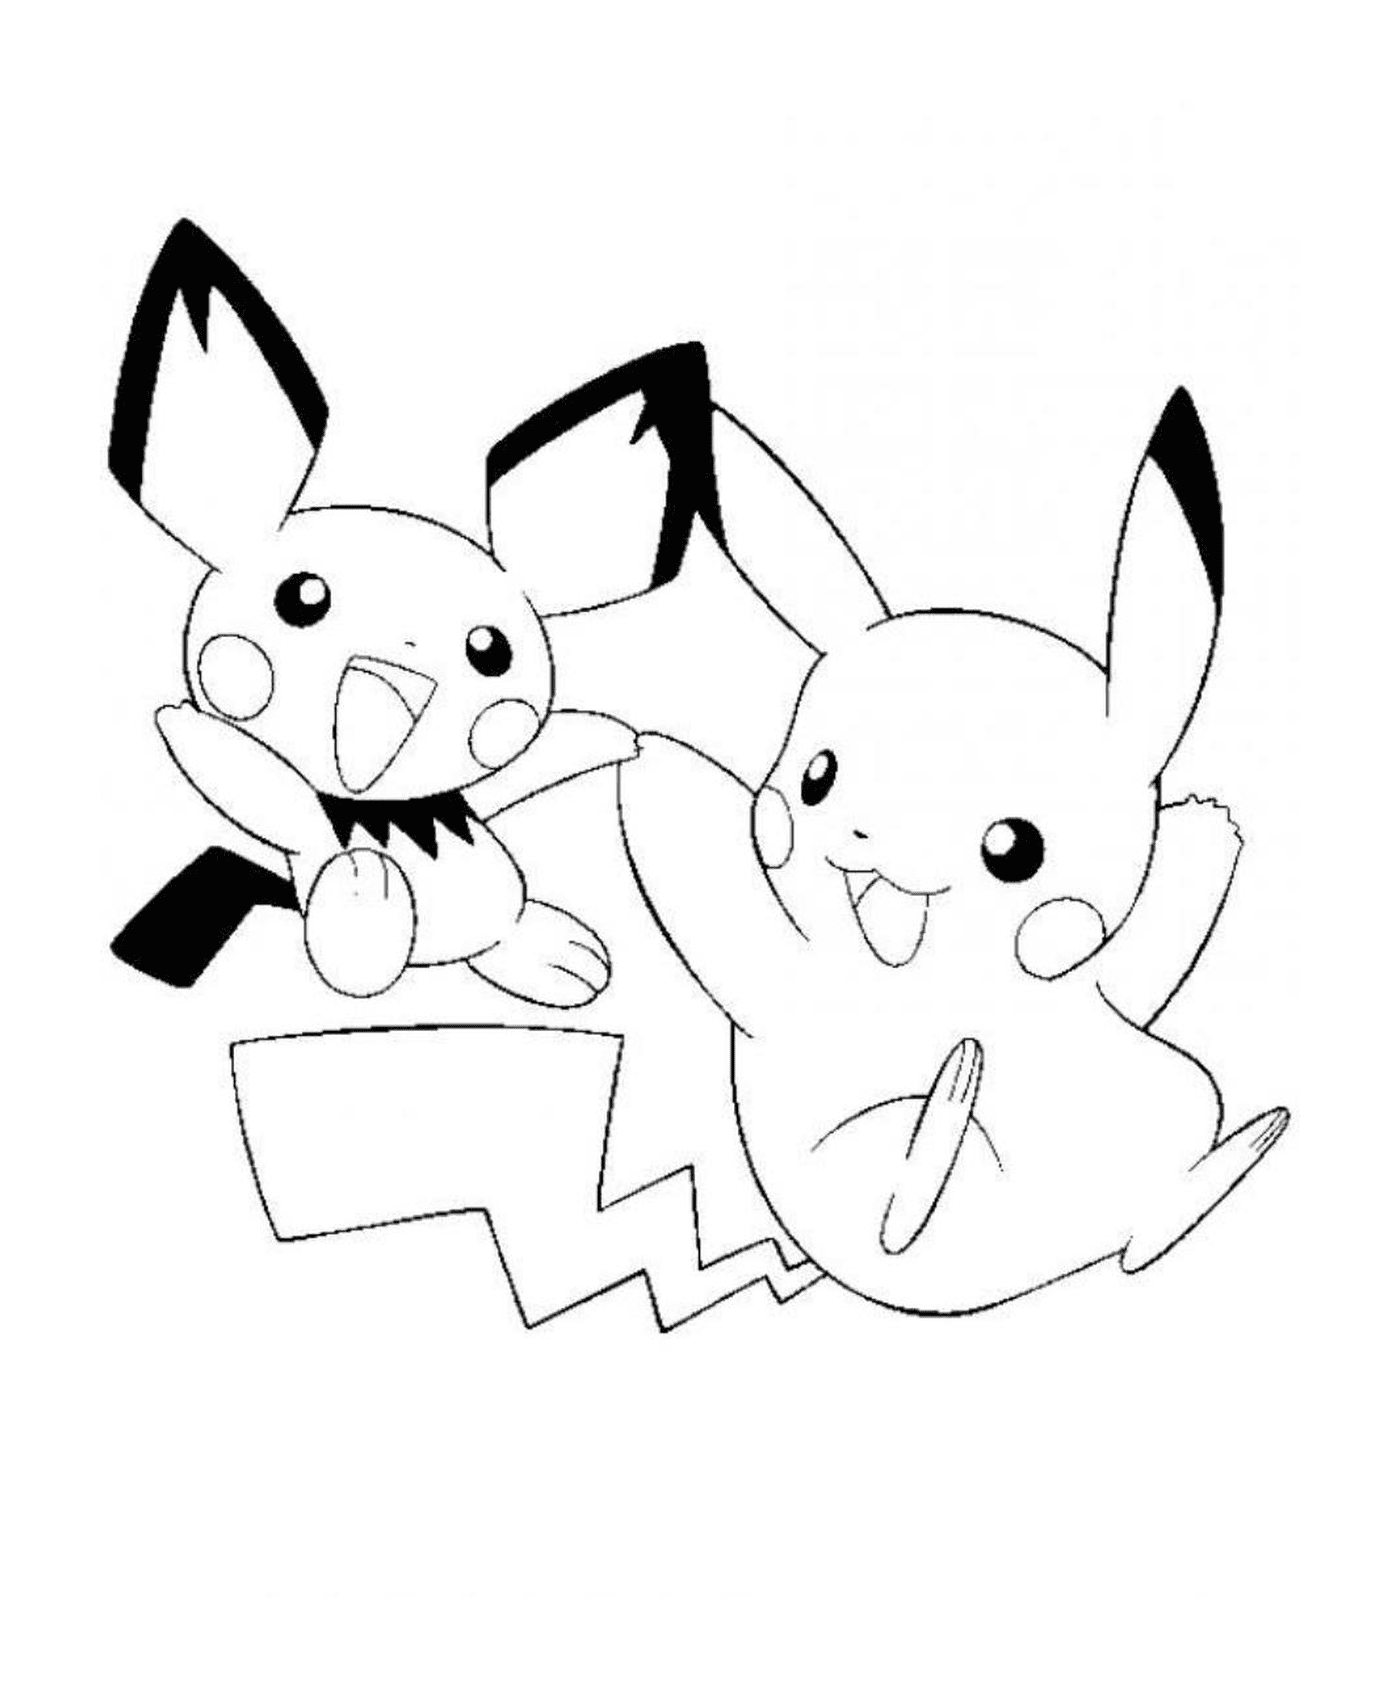  Dos Pikachus se reúnen 